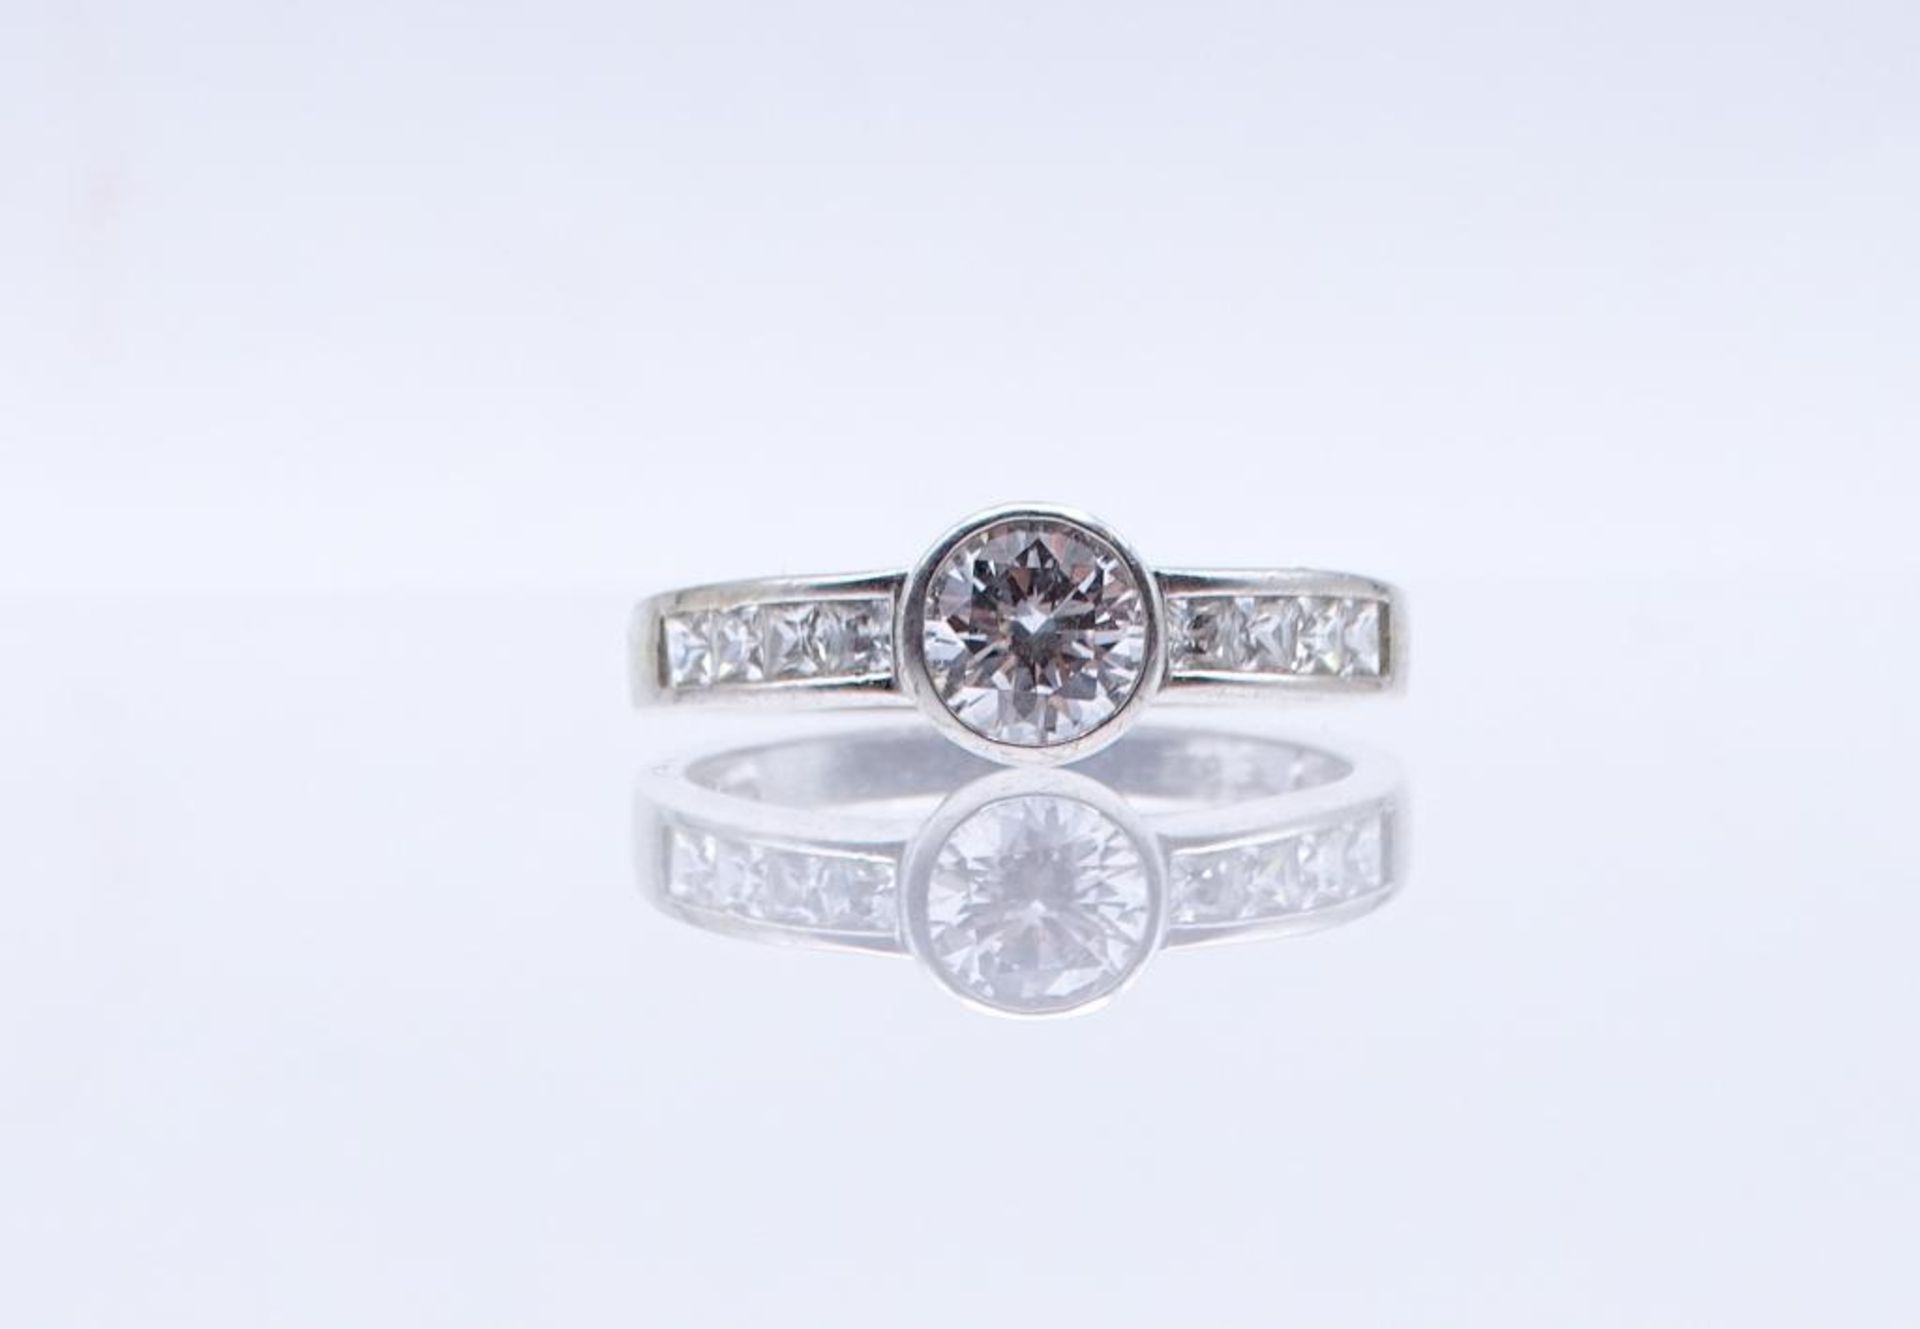 Silber Ring mit Zirkonia Besatz ,Silber 925/000, 4,10gr., RG 63- - -22.61 % buyer's premium on the